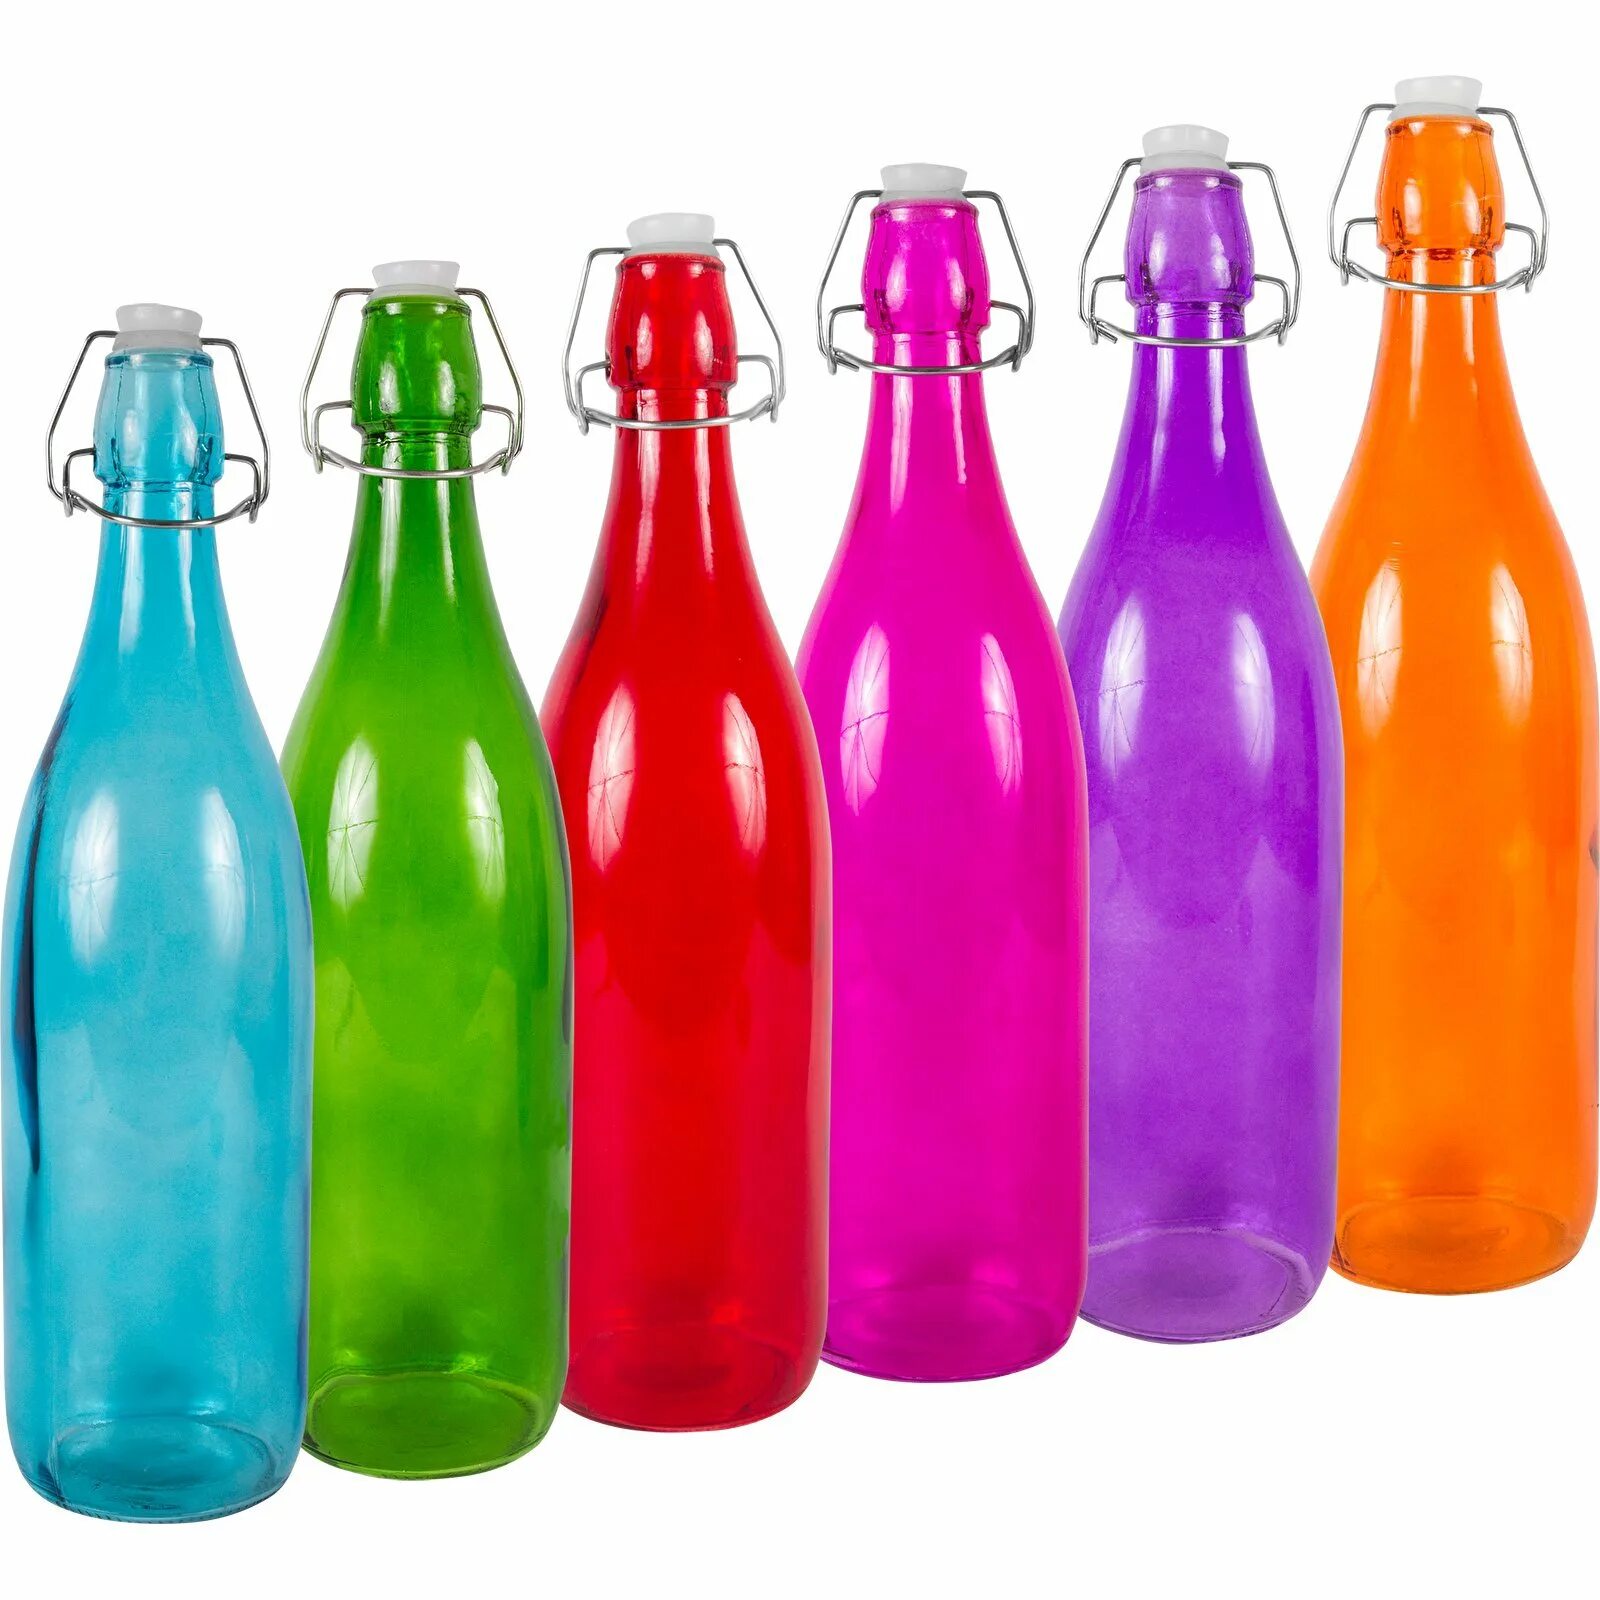 Цветные бутылочки. Бутыль бугельная 1л цветная. Цветные бутылки. Декоративные цветные бутылочки. Цветные флаконы.